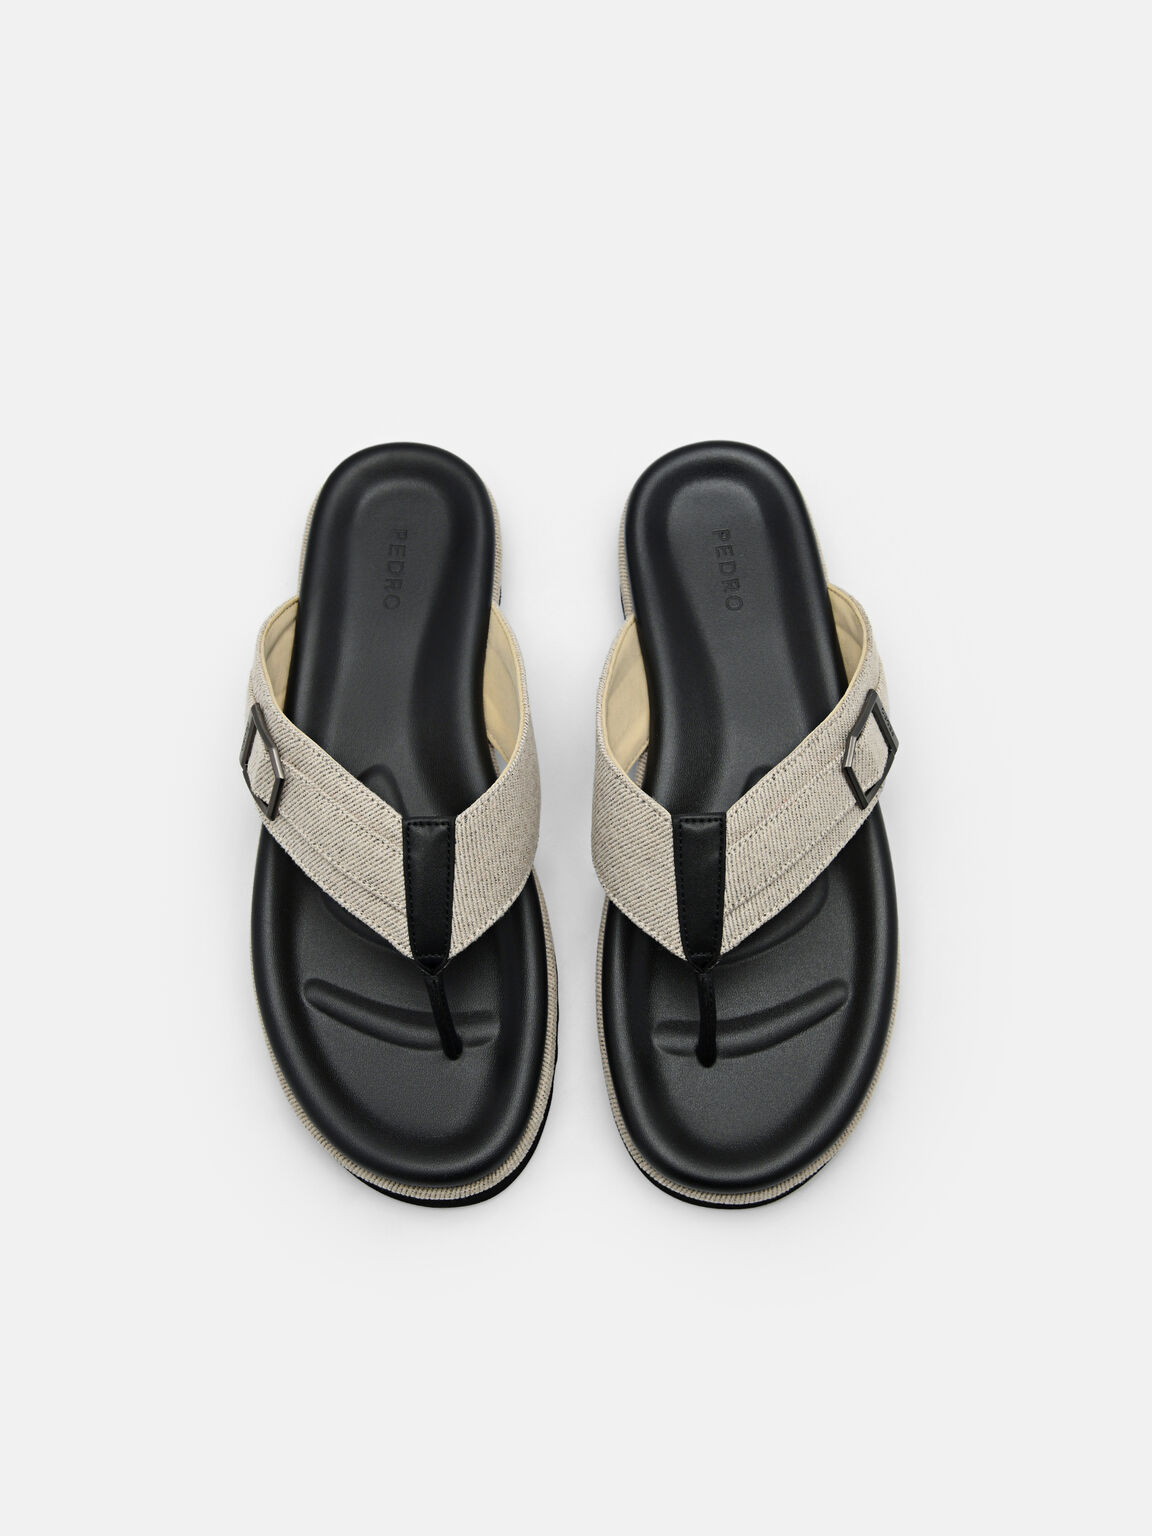 Ezra Fabric Thong Sandals, Beige, hi-res